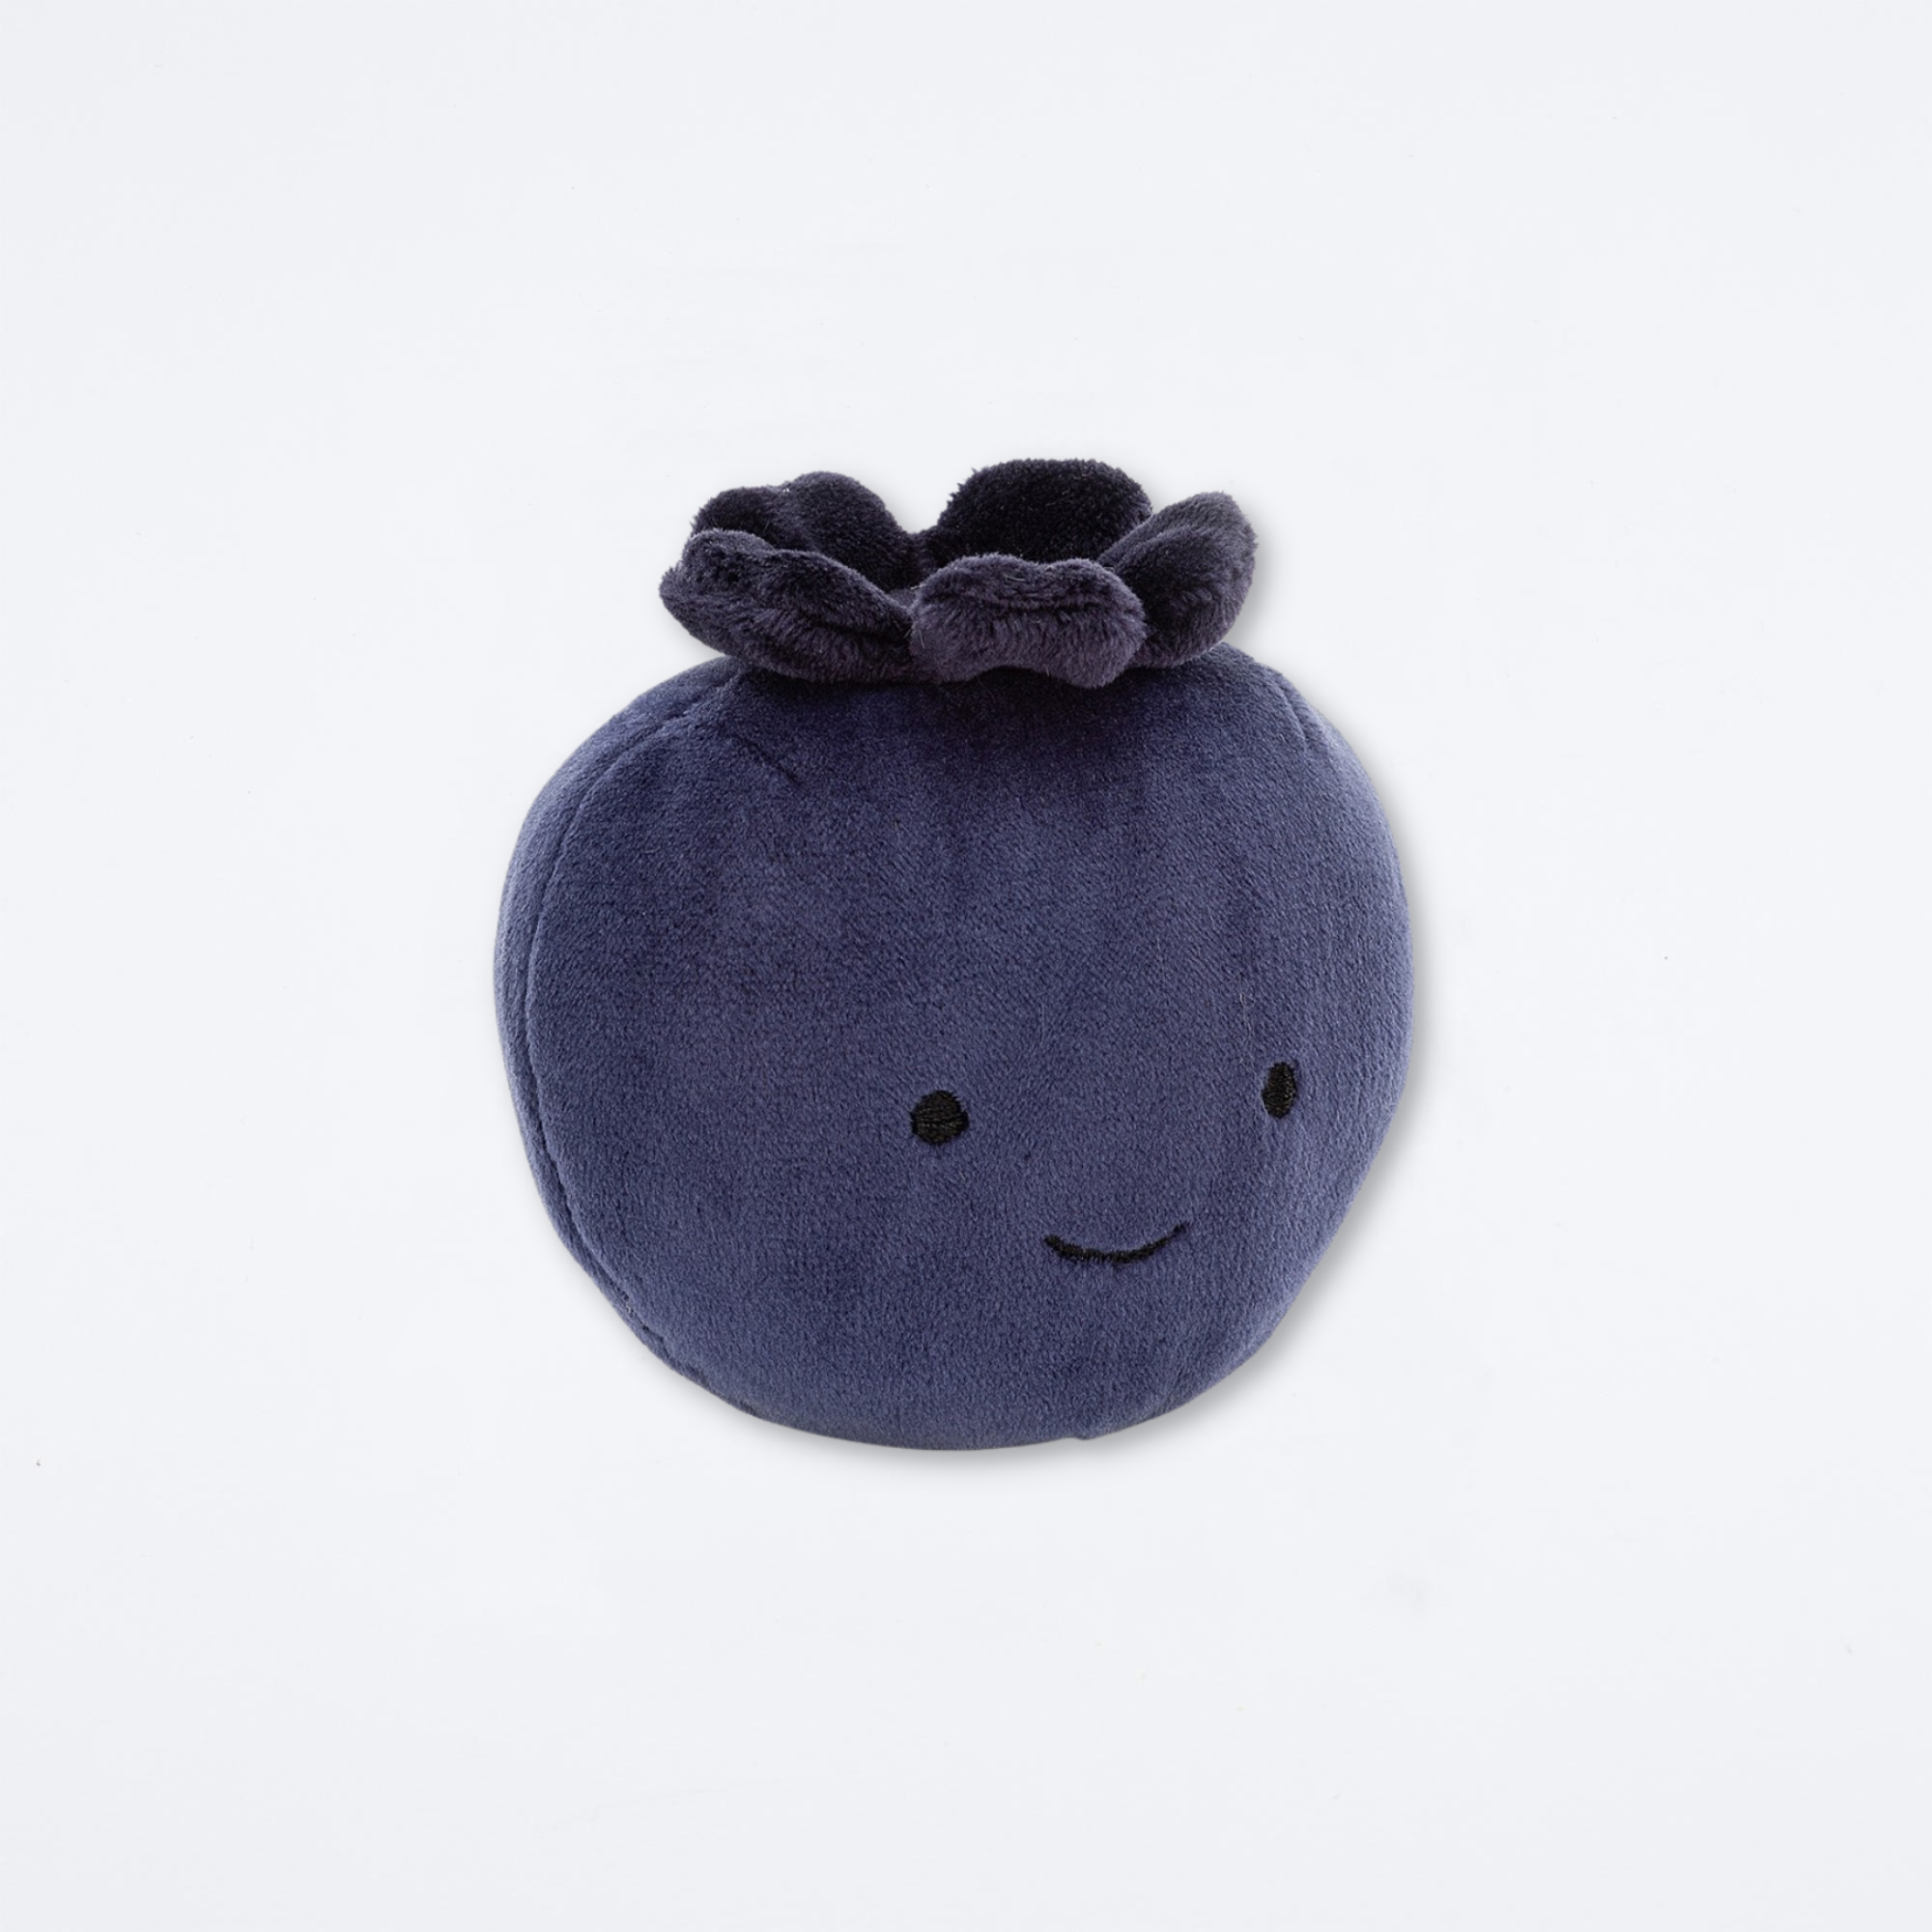 Fabulous Fruit Blueberry